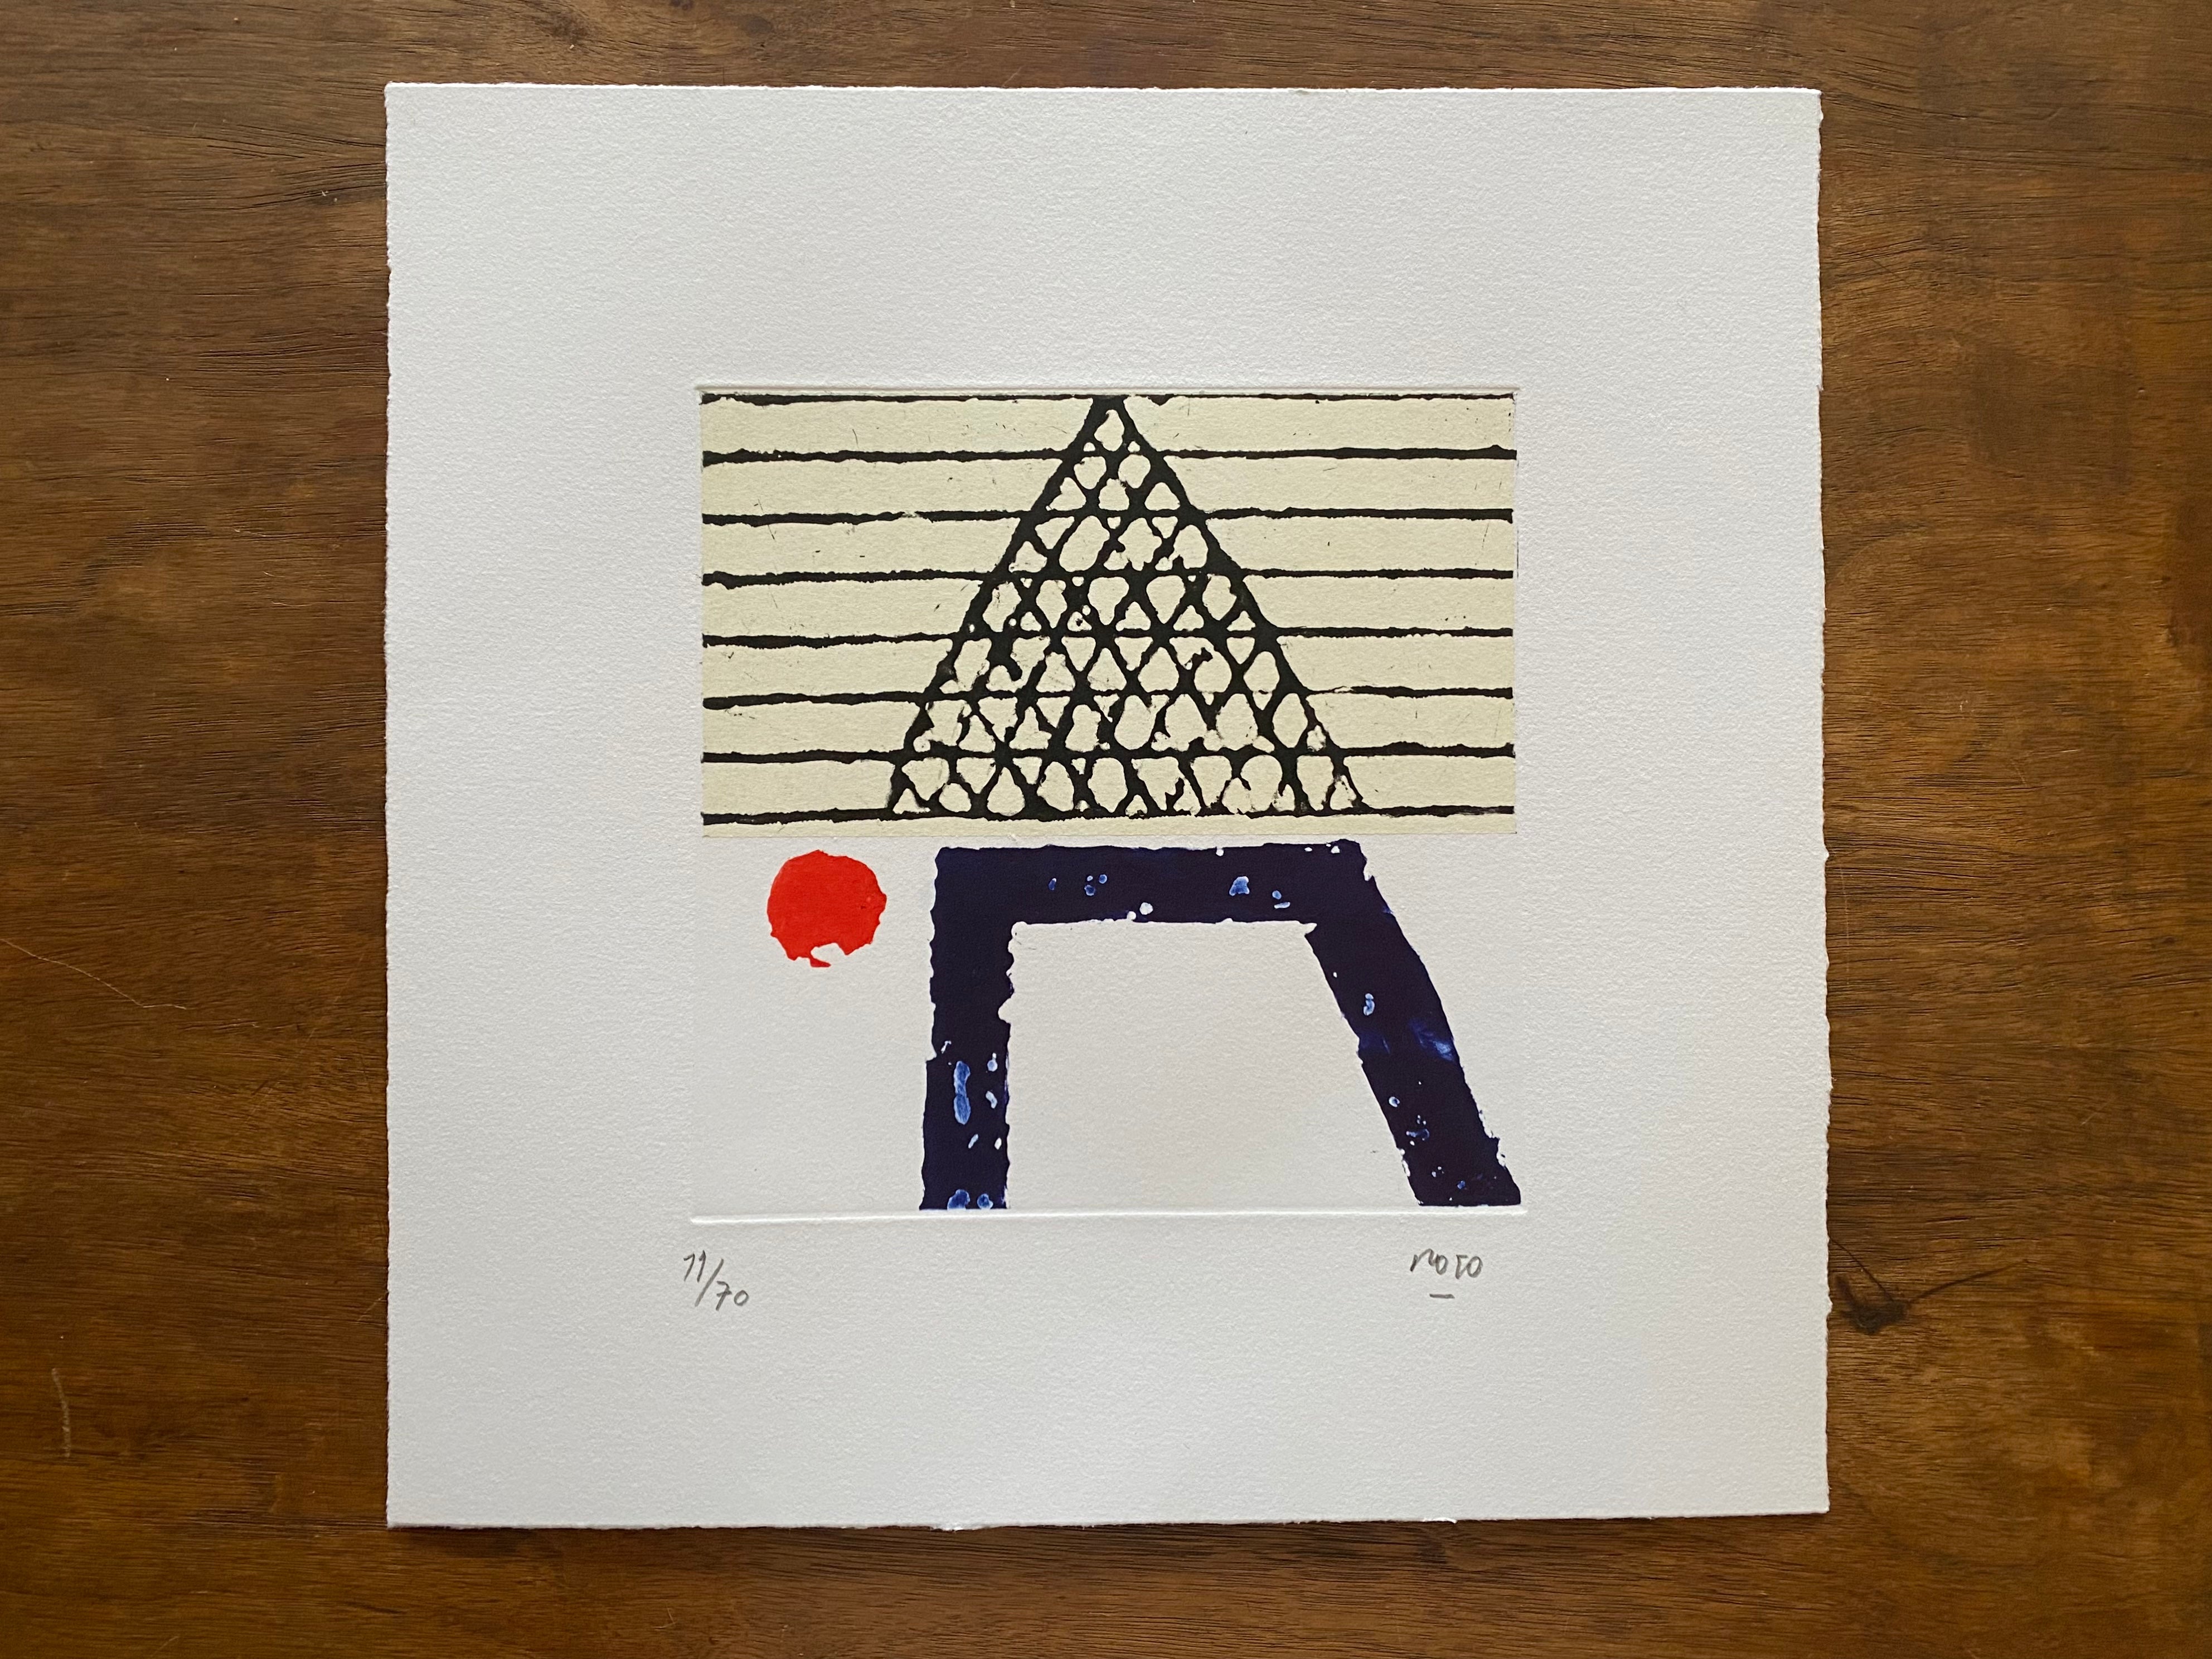 Vicente Rojo “ Primera letras cuarteto “ engravings of sugar and aquatint 2015